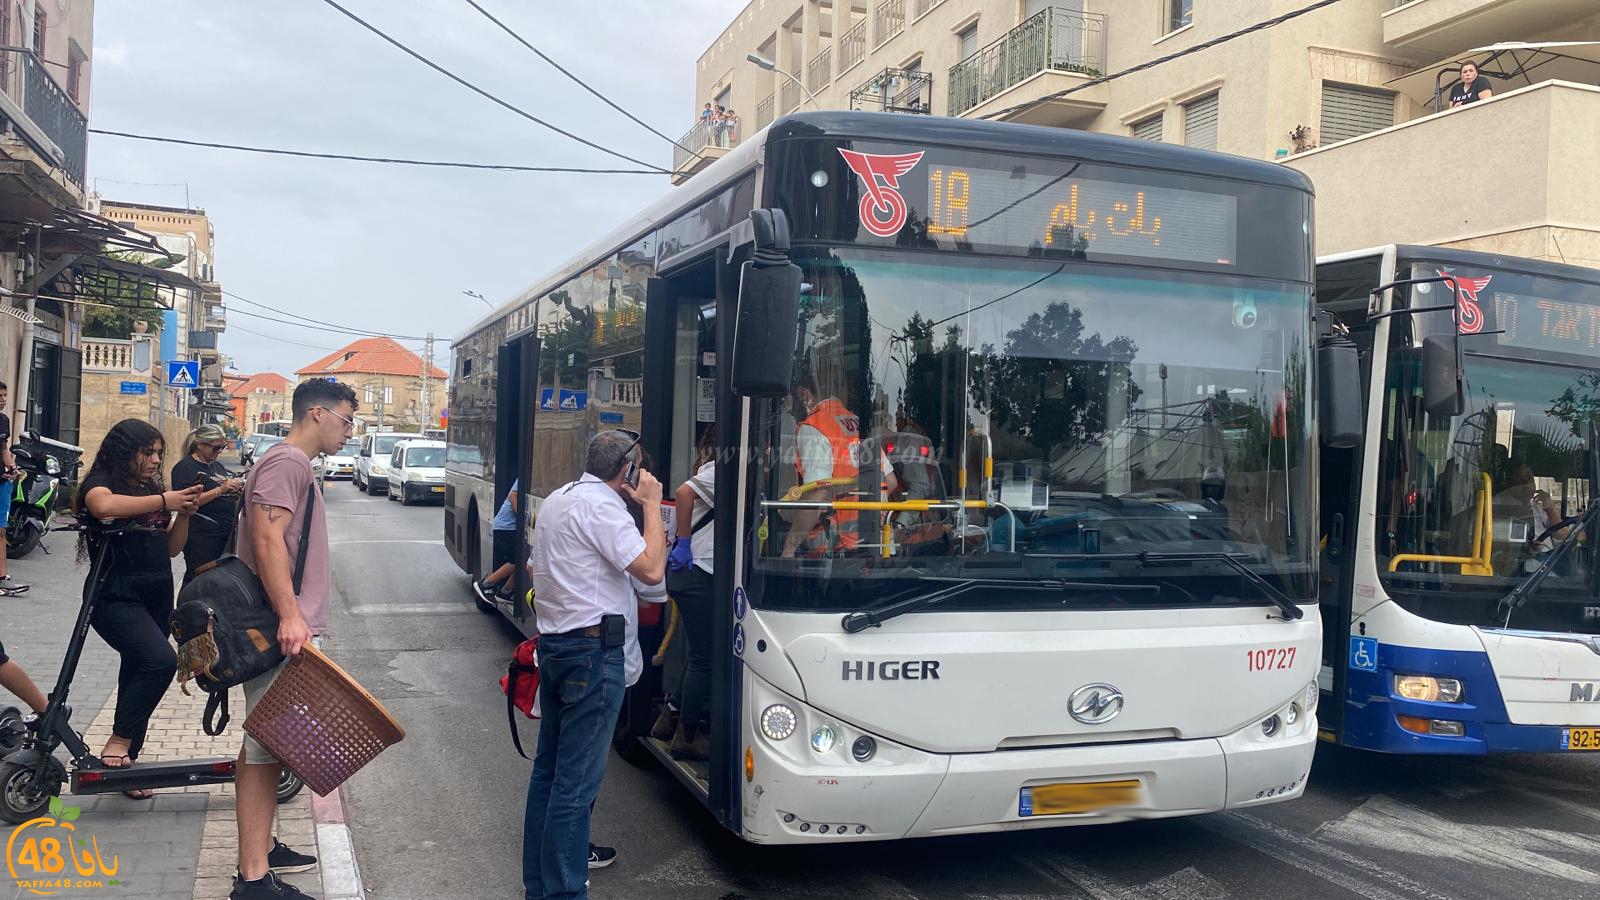  يافا: اصابة طفيفة لراكب داخل احدى الحافلات بالمدينة